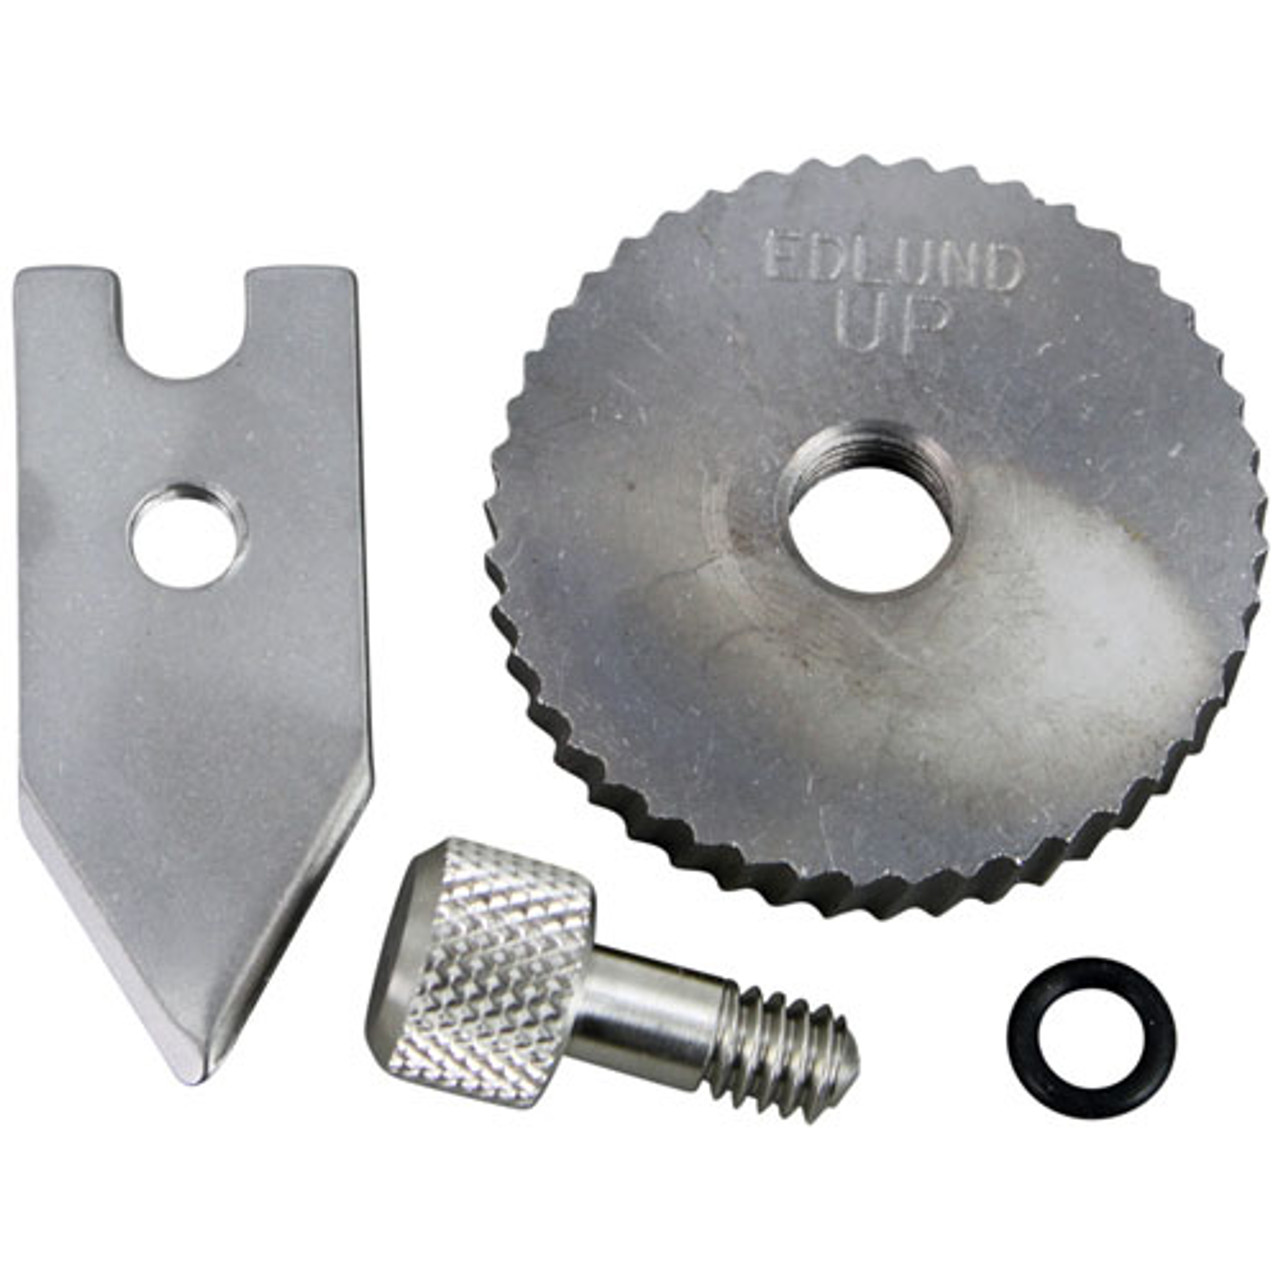 Edlund G030 - Parts Kit - U-12/S-11